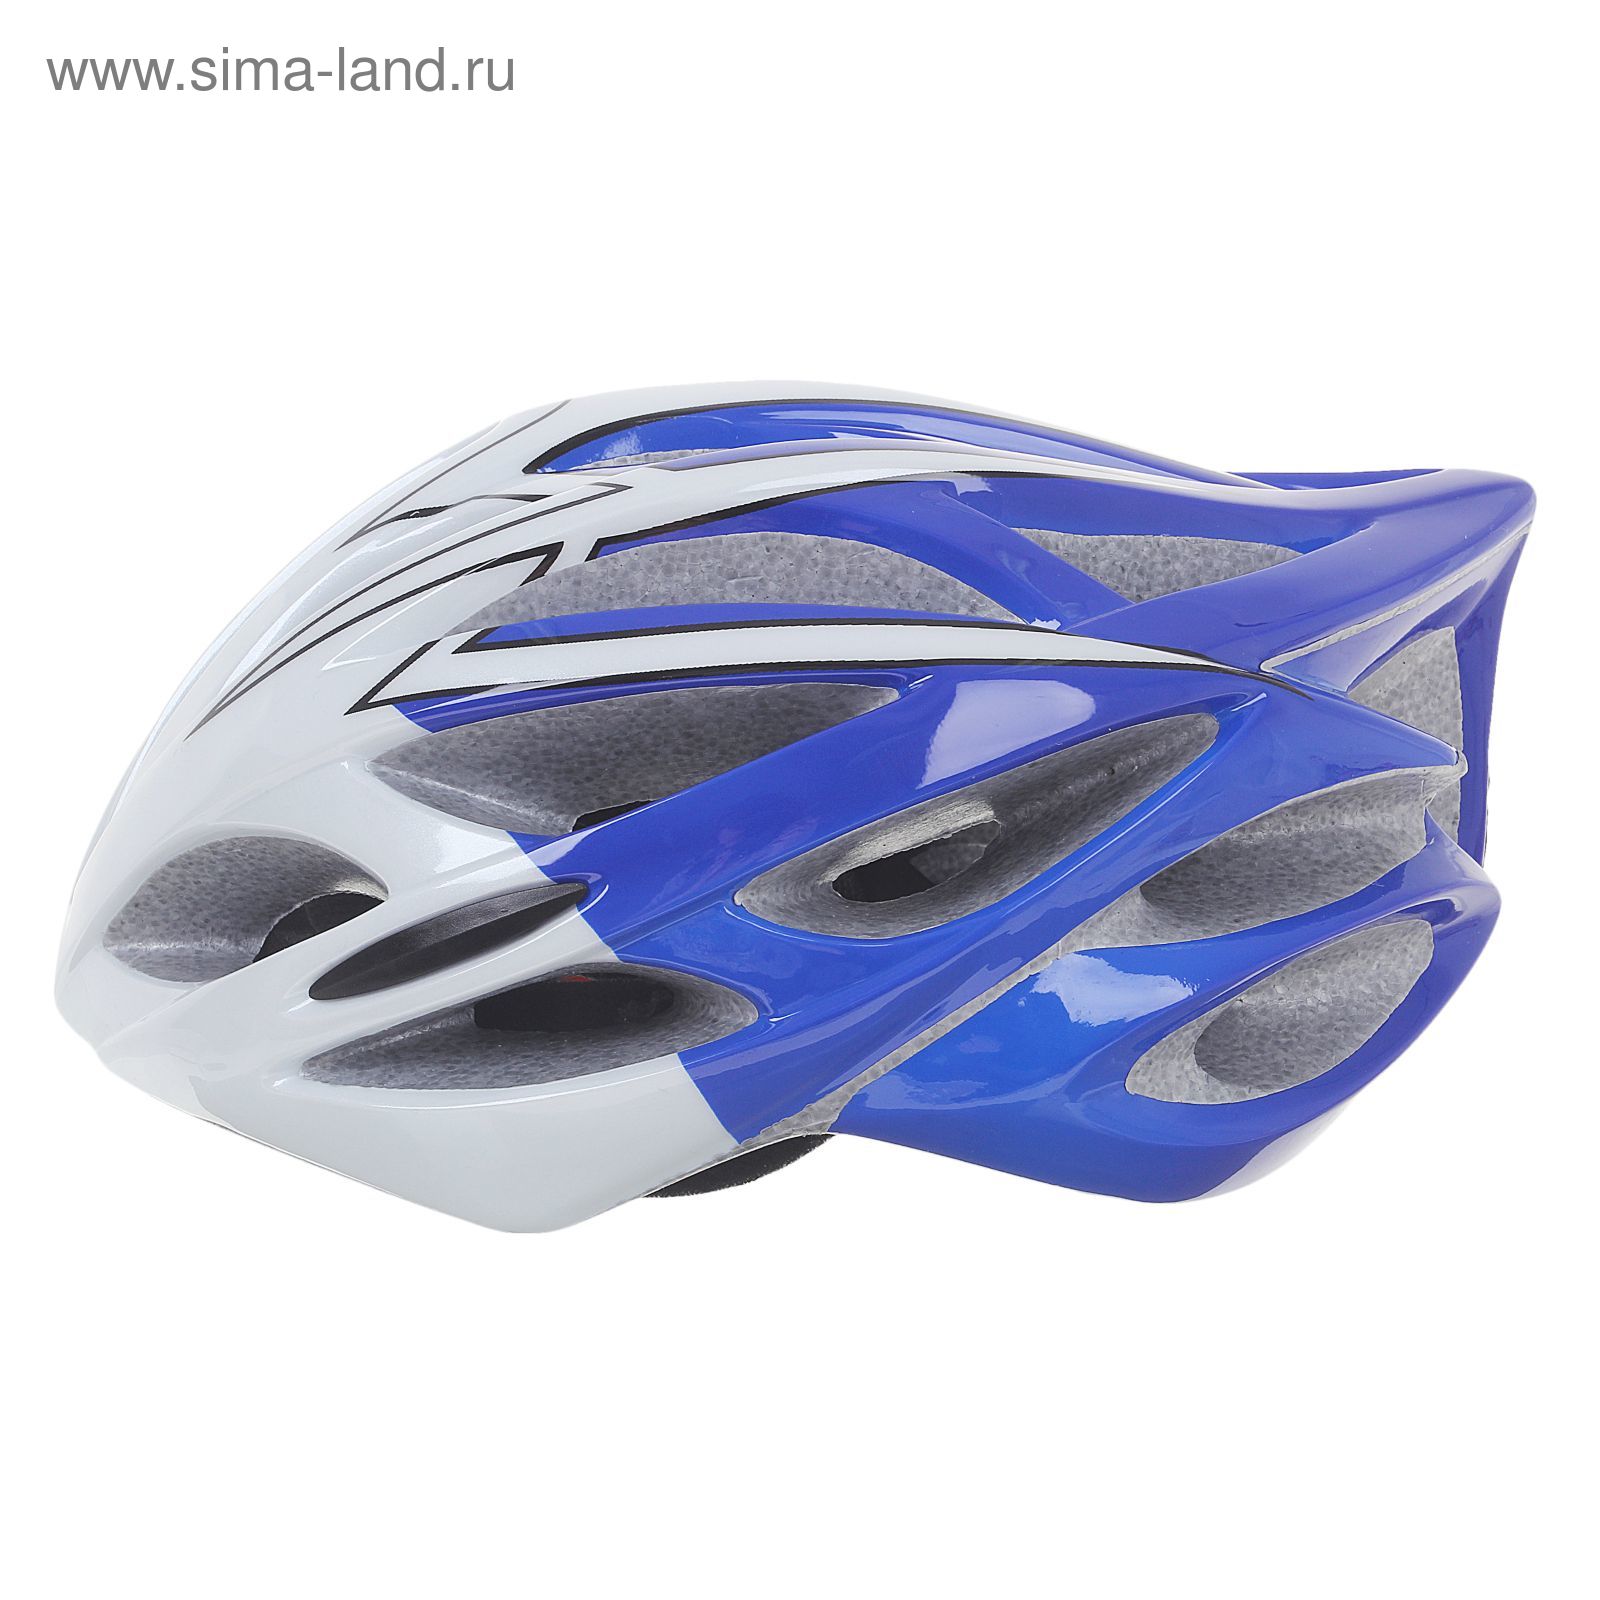 Шлем велосипедиста взрослый ОТ-325, сине-белый, диаметр 54 см